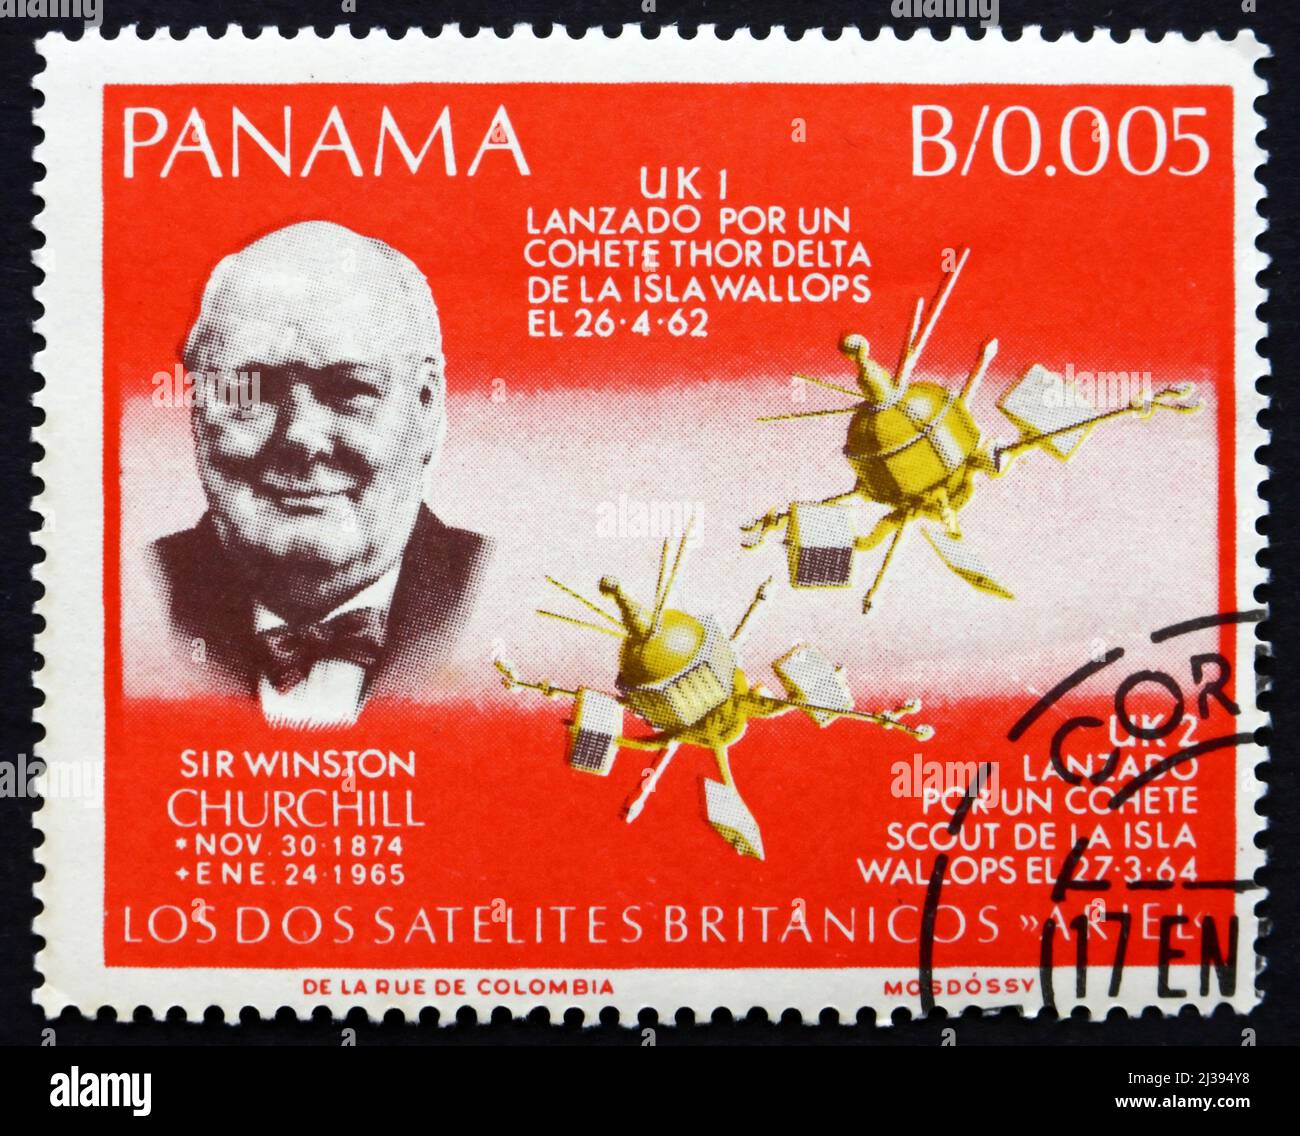 PANAMA - UM 1966: Eine in Panama gedruckte Marke zeigt Sir Winston Churchill, British Satellites, um 1966 Stockfoto